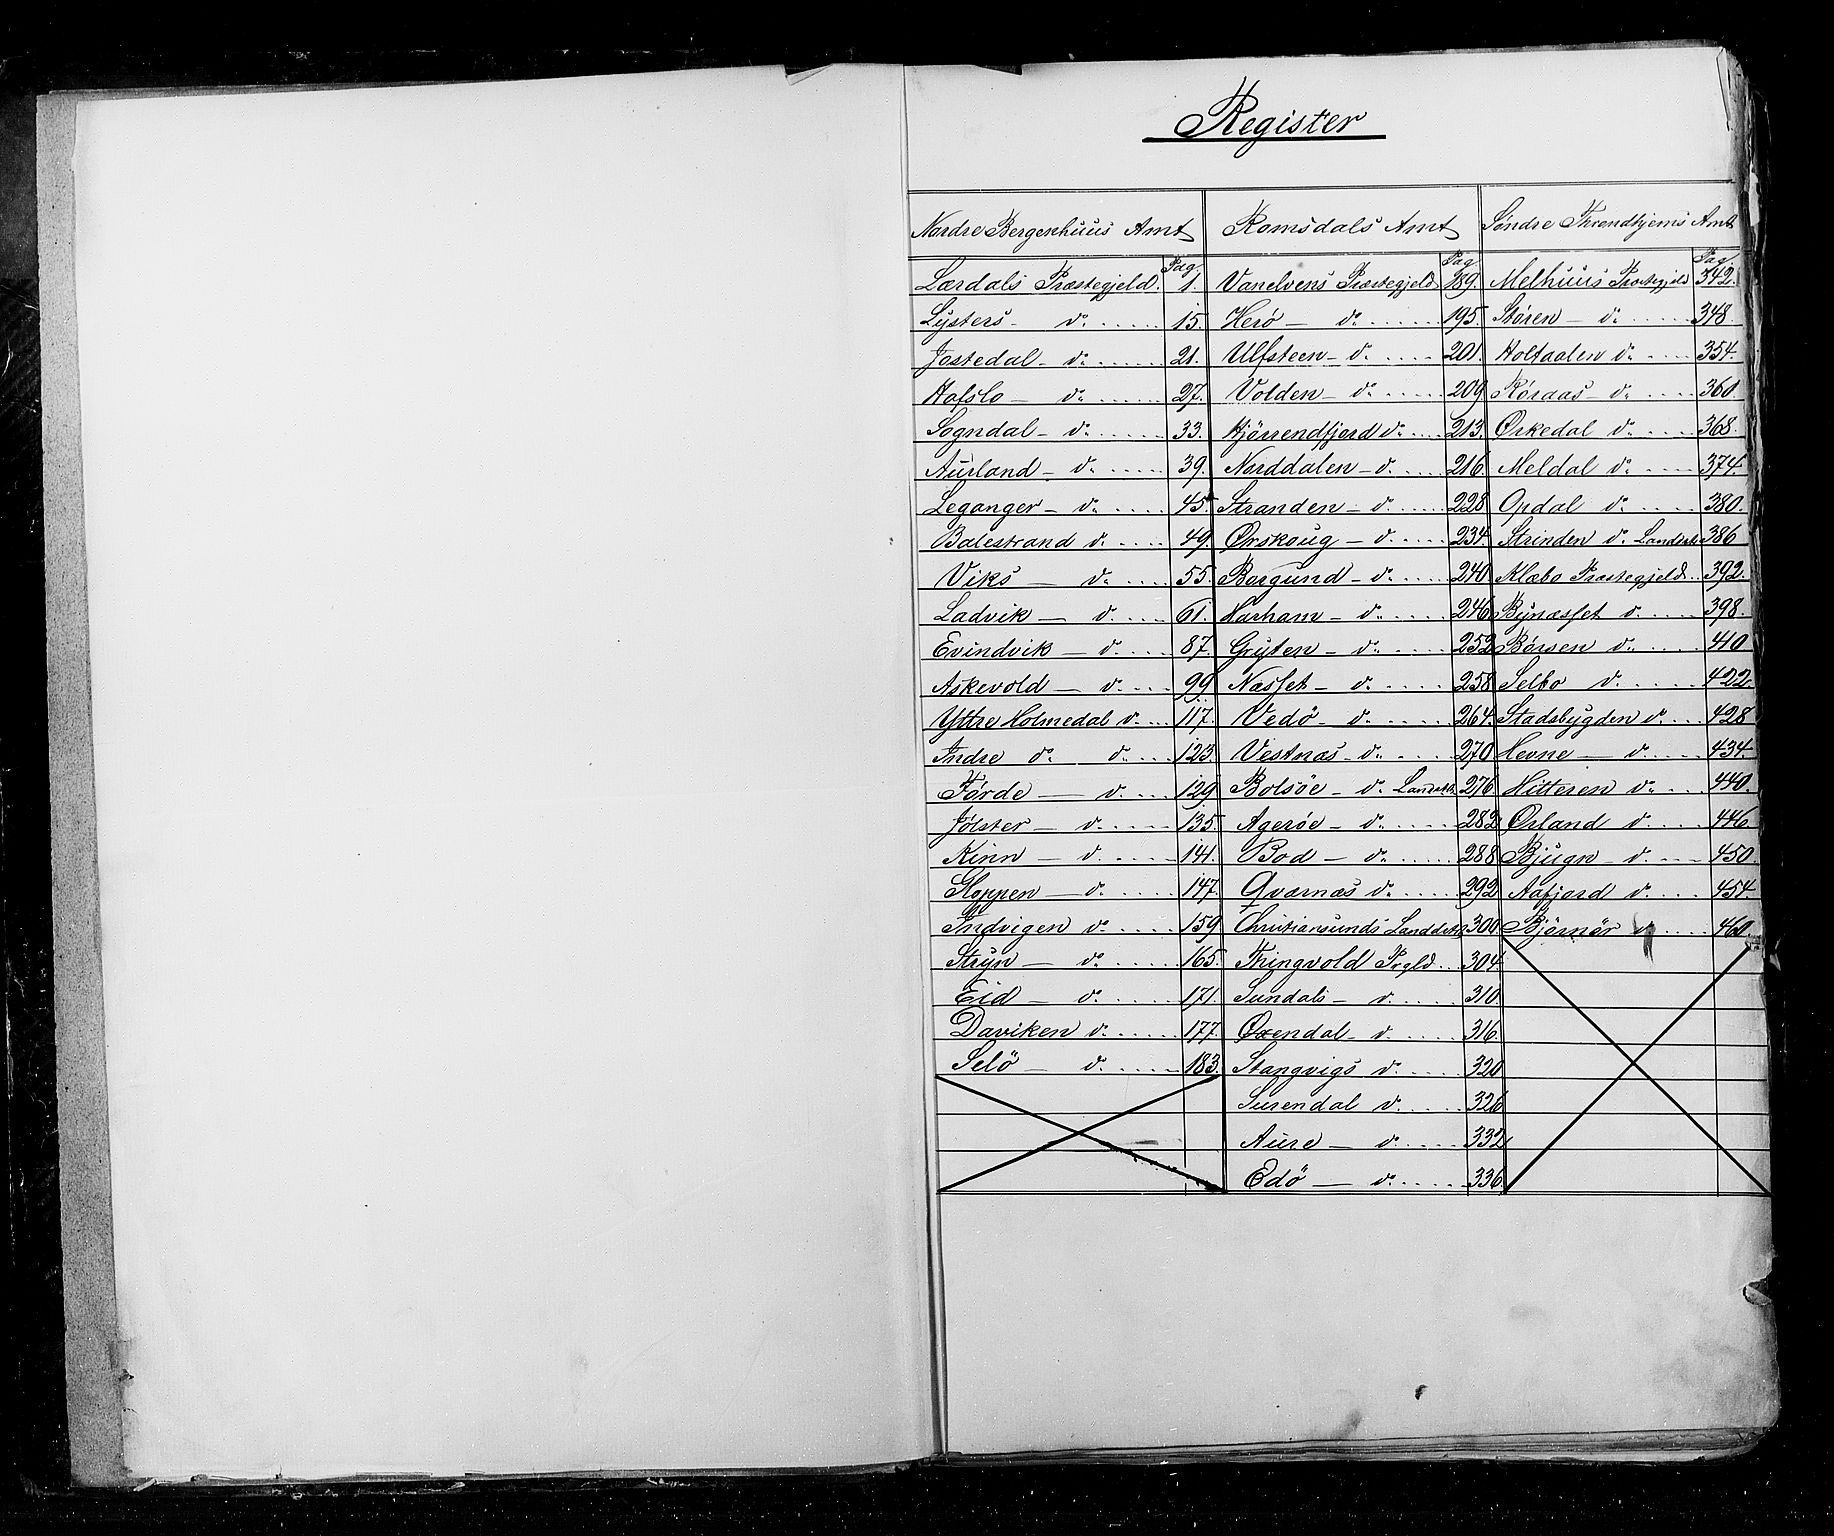 RA, Census 1855, vol. 5: Nordre Bergenhus amt, Romsdal amt og Søndre Trondhjem amt, 1855